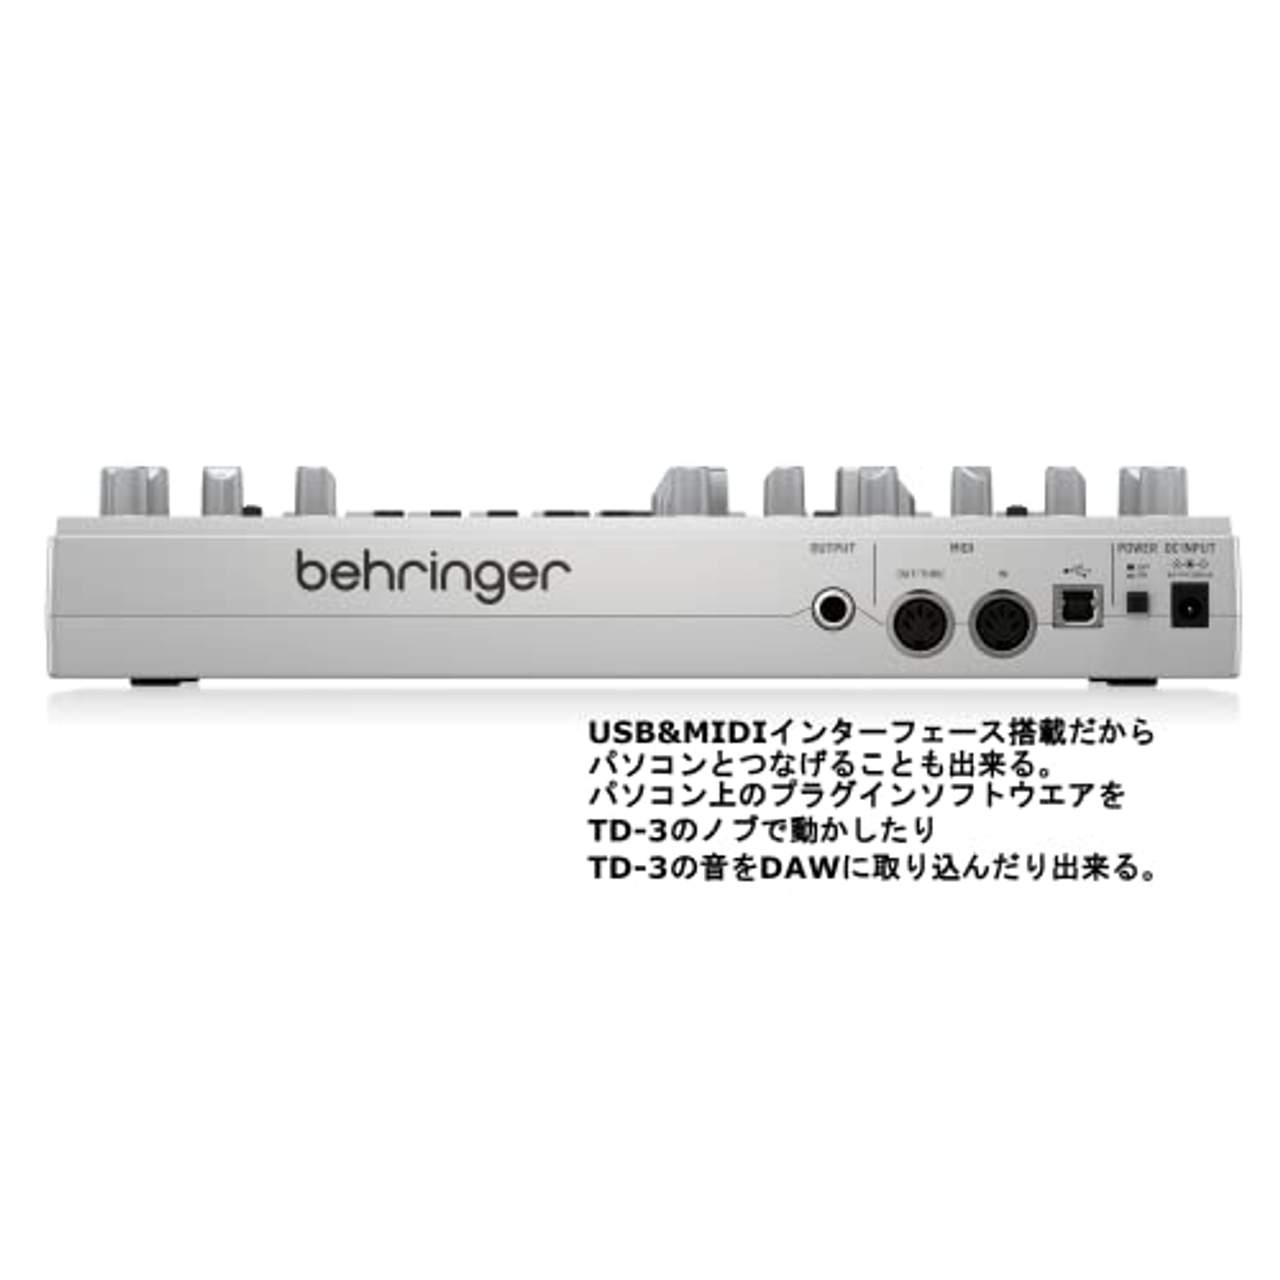 Behringer TD-3-SR Analoger Bass-Line-Synthesizer